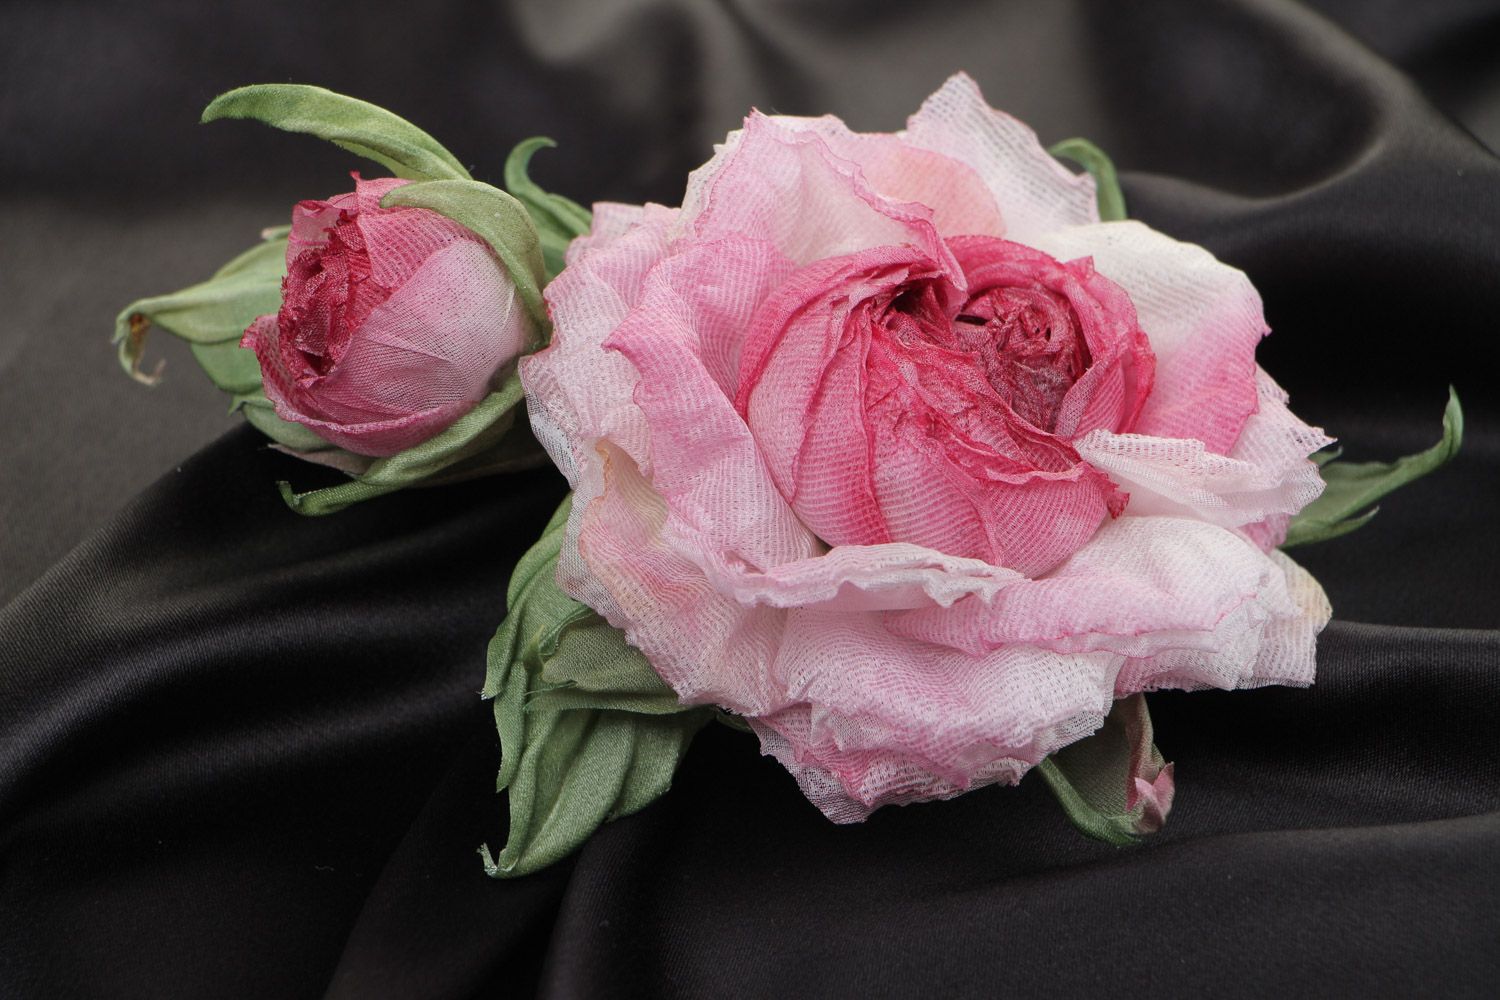 Брошь в виде розы крупная розовая нежная красивая стильная изящная ручной работы фото 1